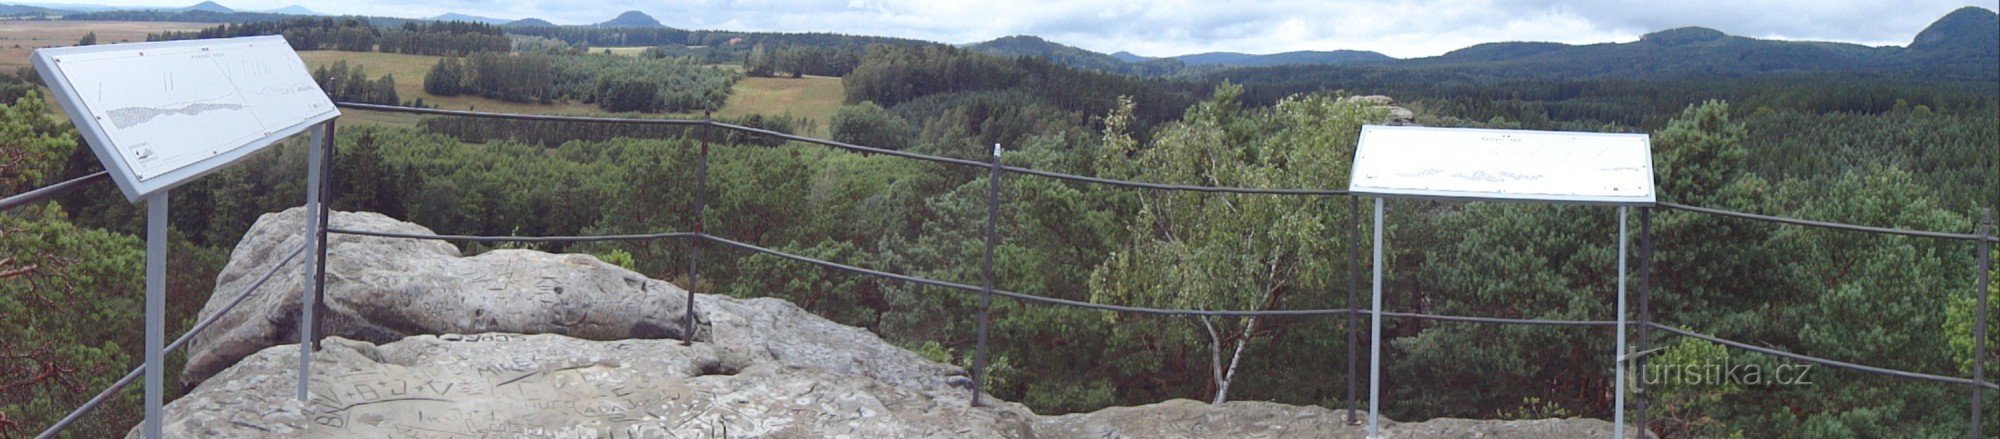 panorama do planalto do cume de Raven Rocks